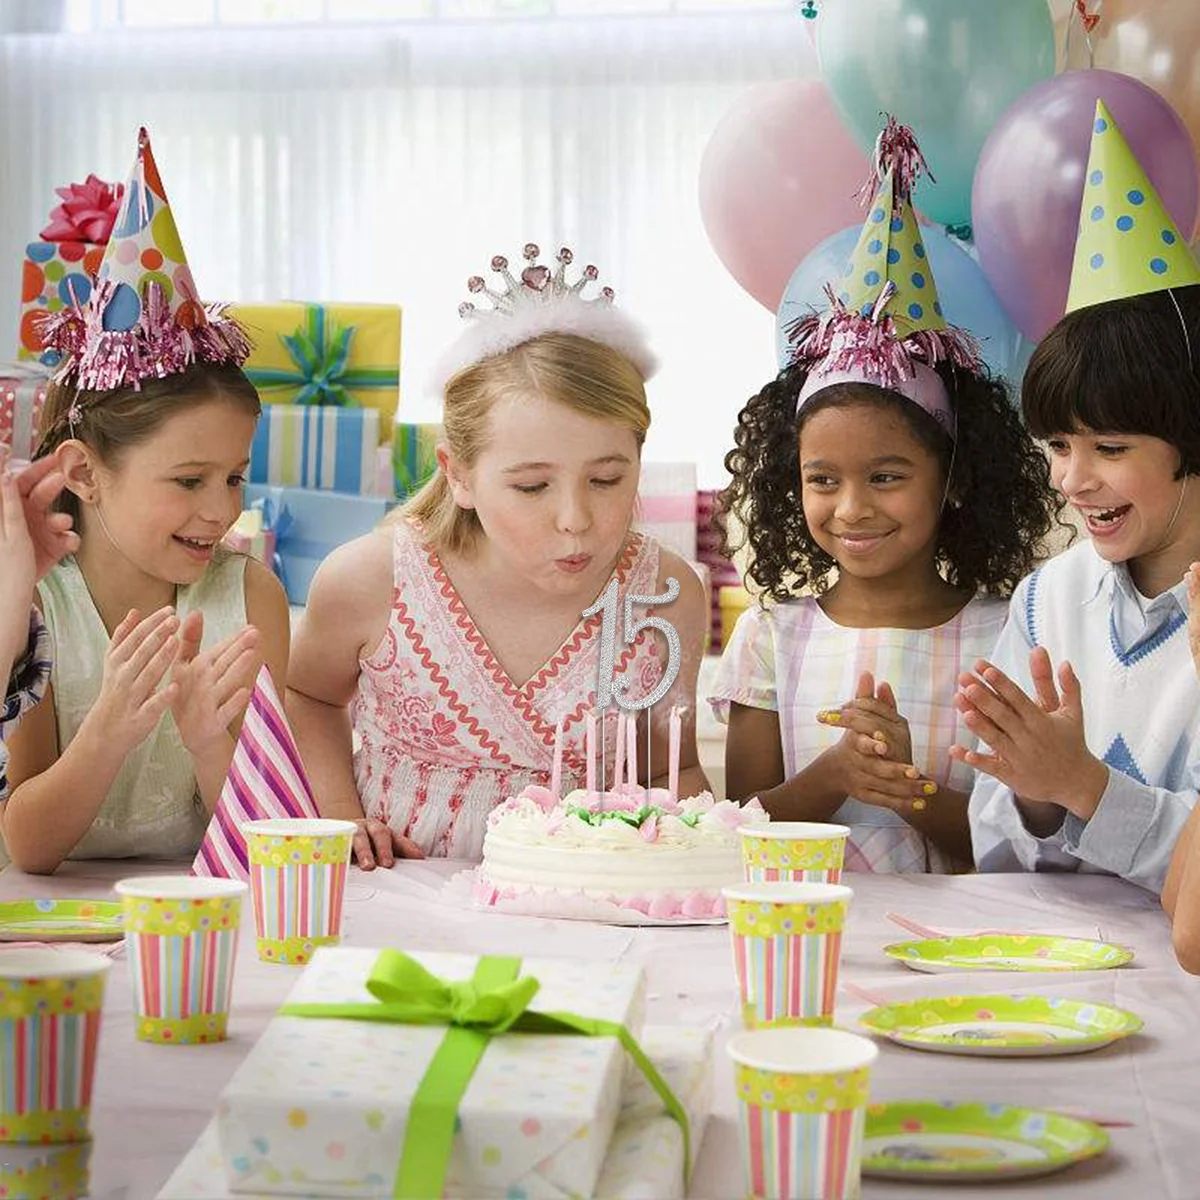 A birthday. День рождения вечеринка. С днём рождения ребёнку. Детский день рождения stock. Вечеринка день рождения дети.